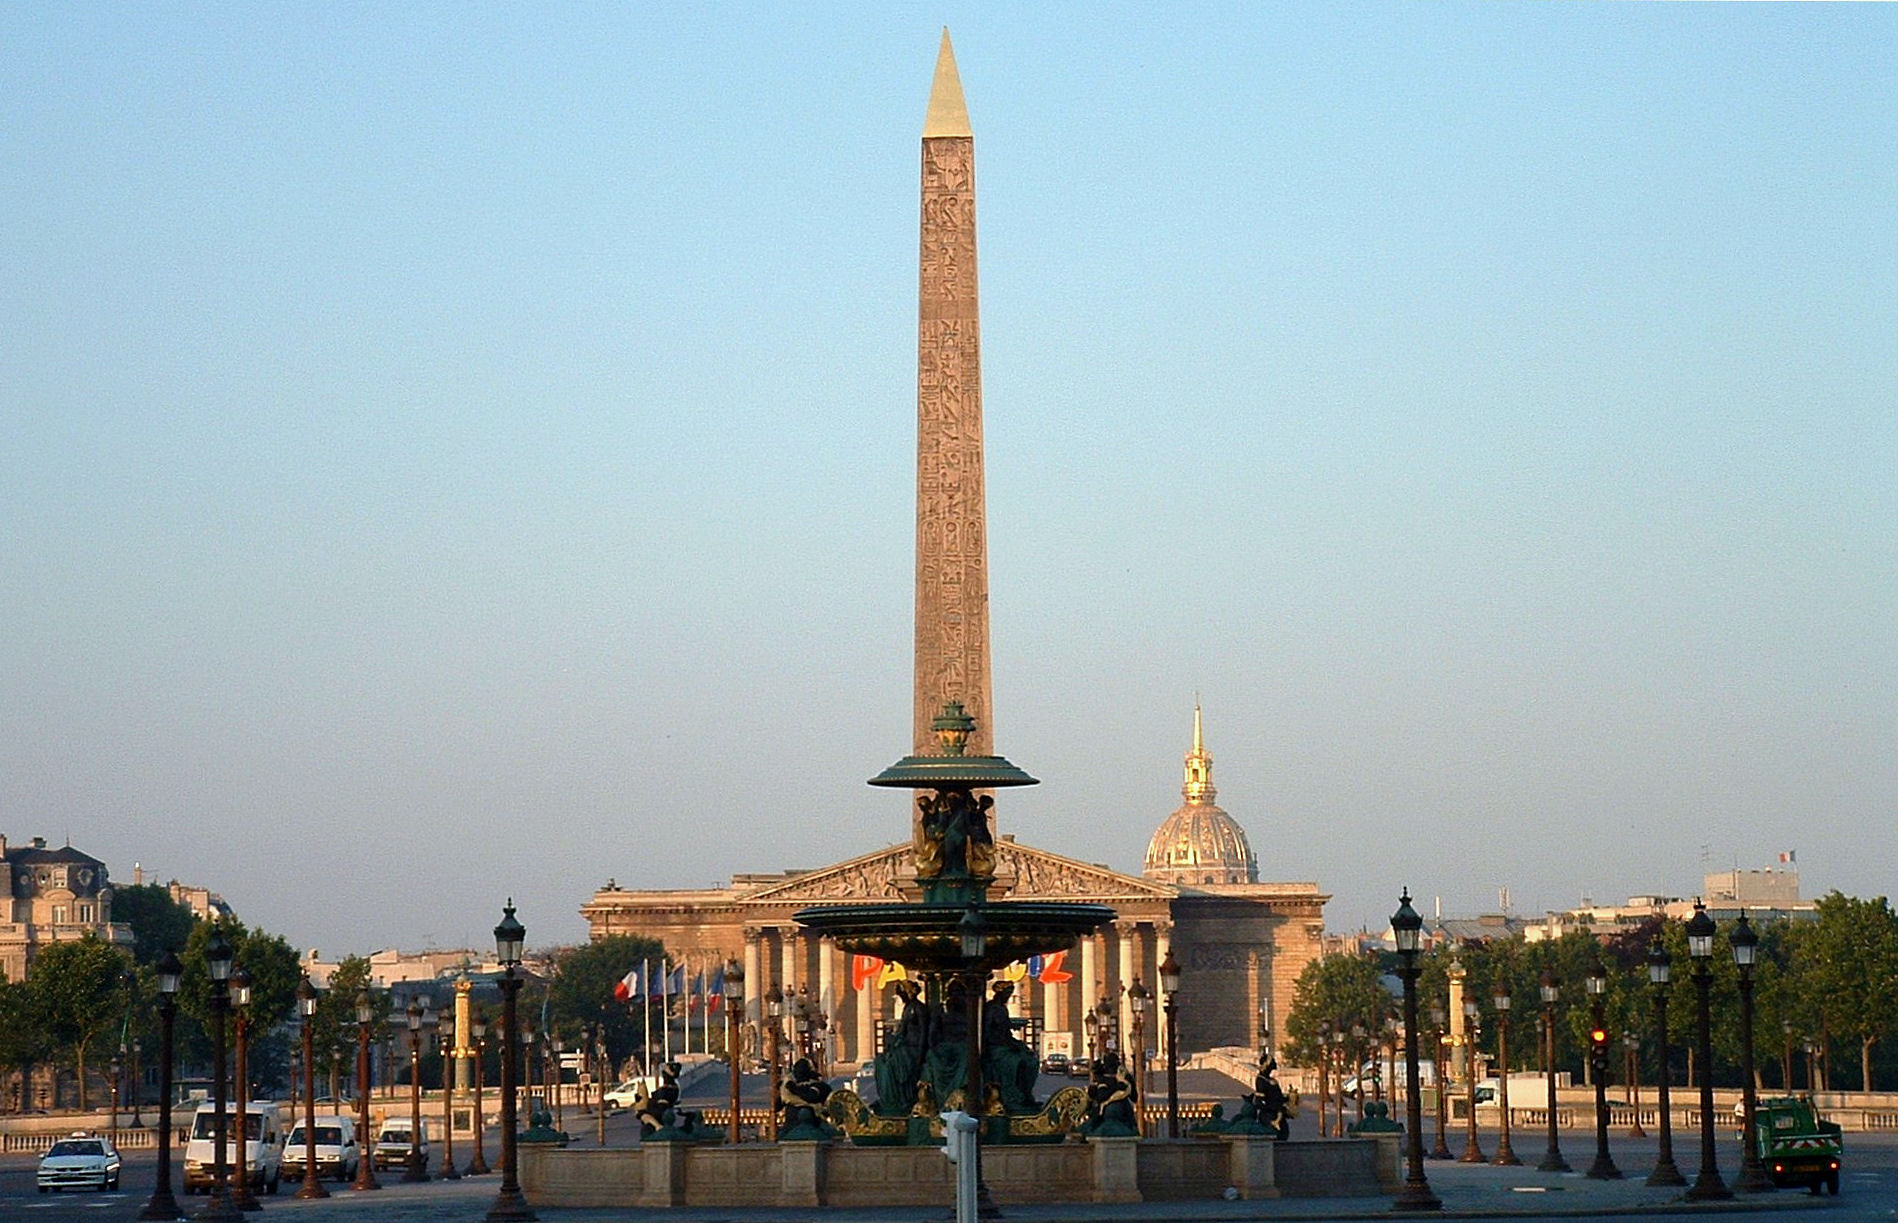 Place De La Concorde, The Most Famous Square in Paris